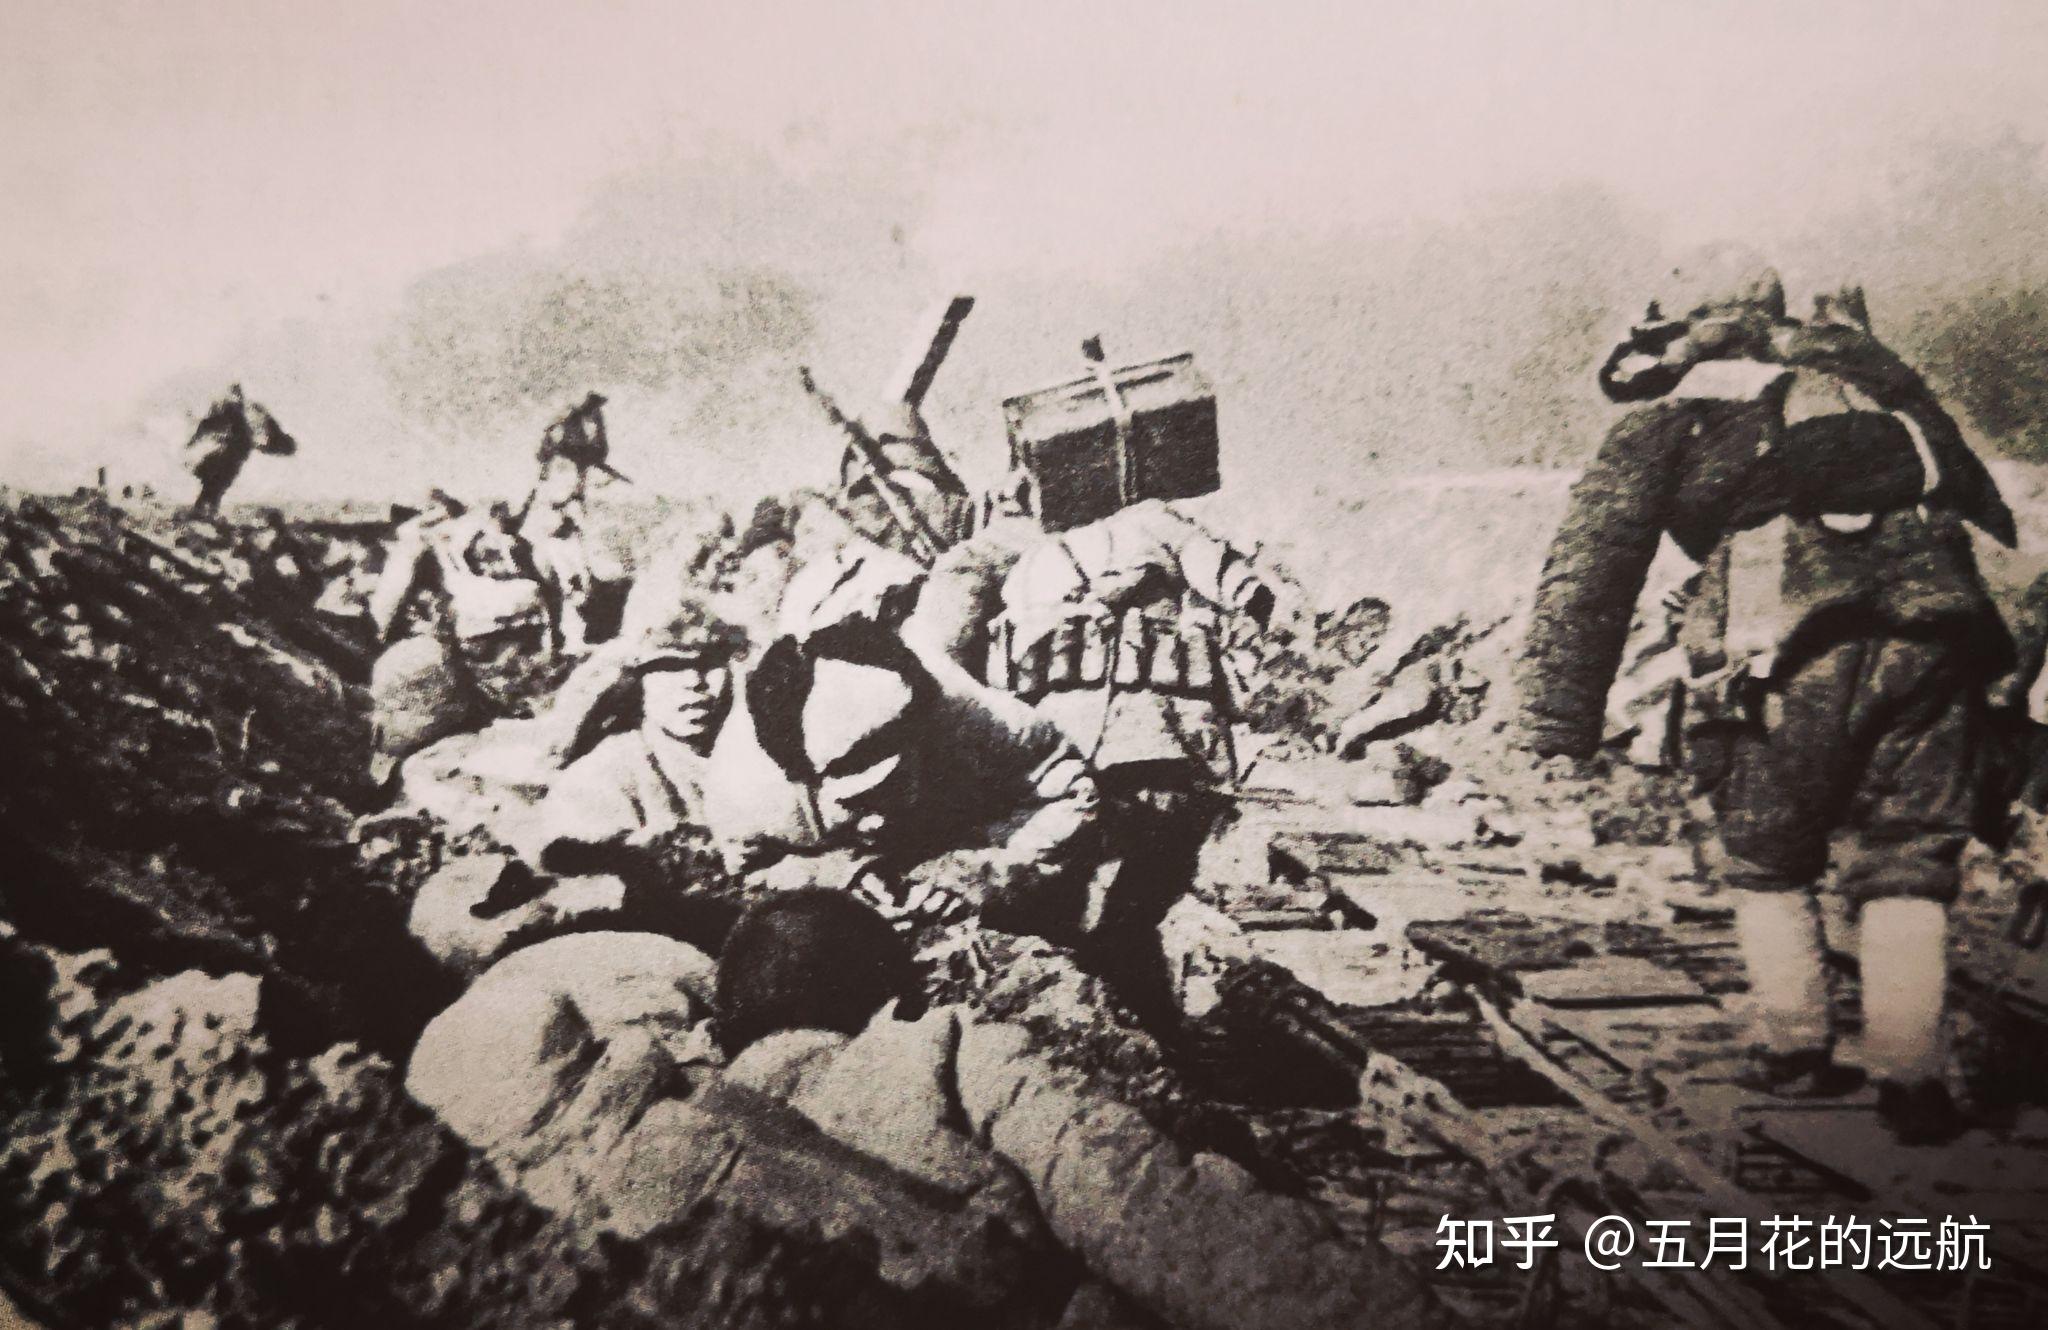 【解放记忆】天津解放记忆:解放天津的东北野战军第二纵队